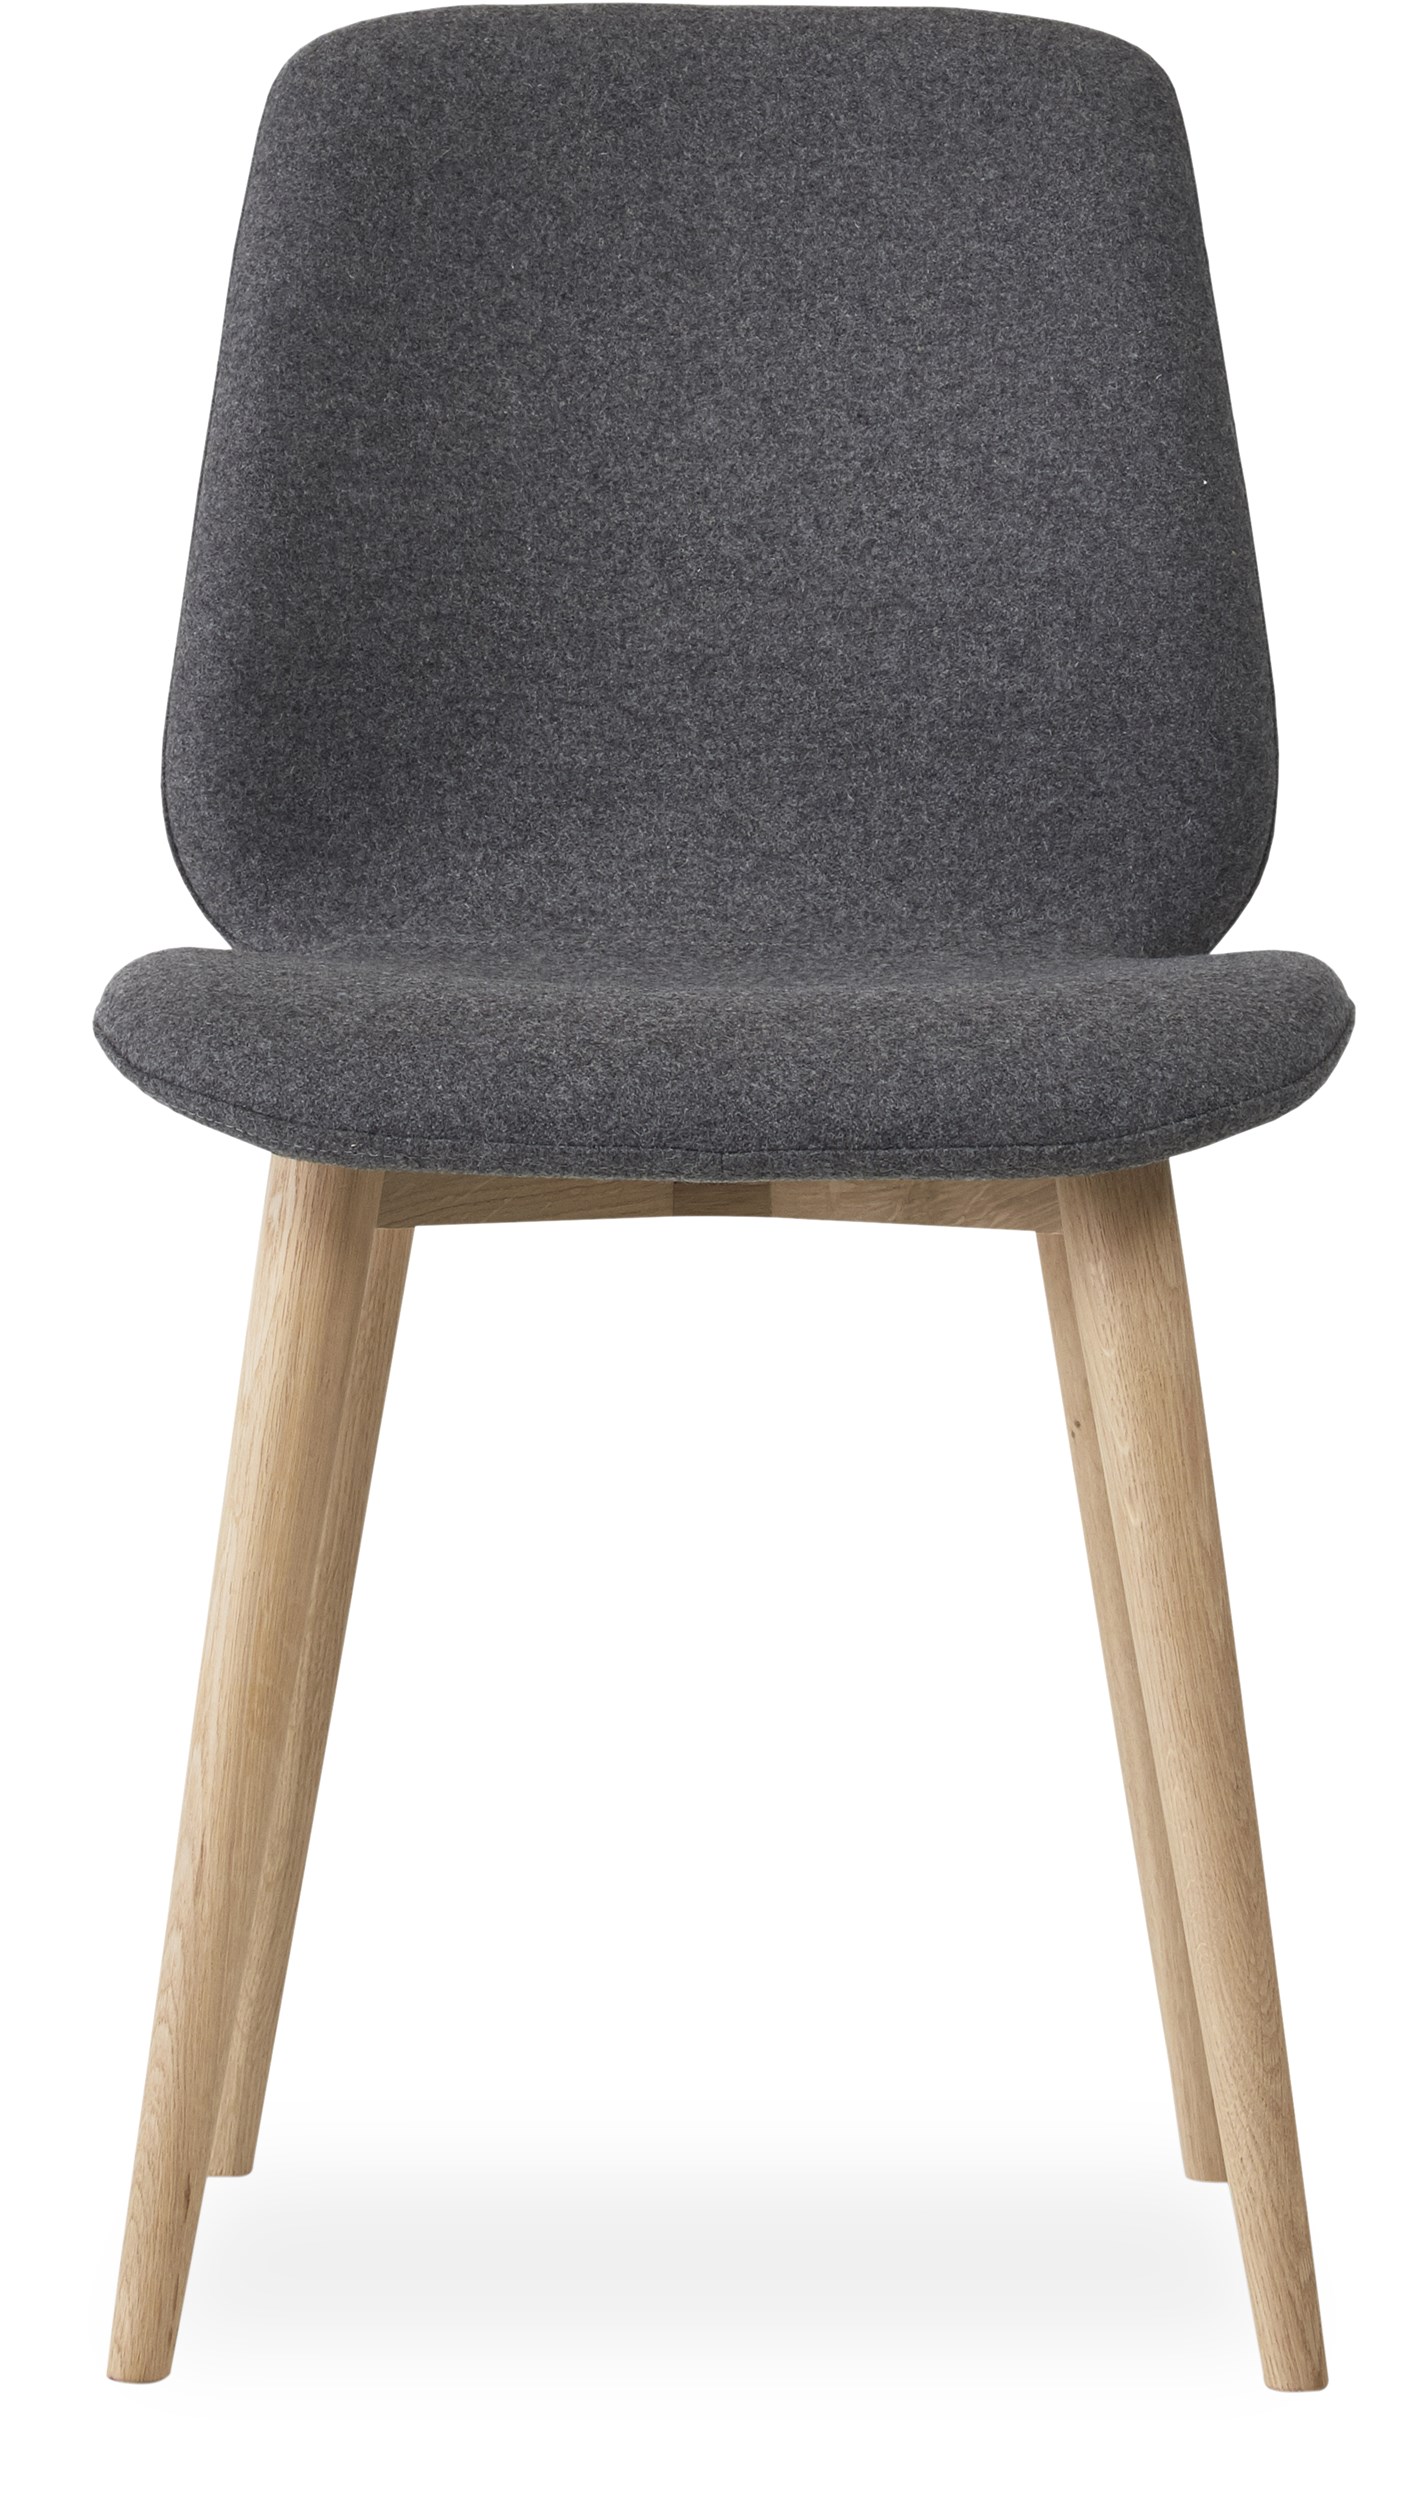 Share matstol - Sits i 26 Dusty grey filt och curveben i vitpigmenterad mattlackad ek